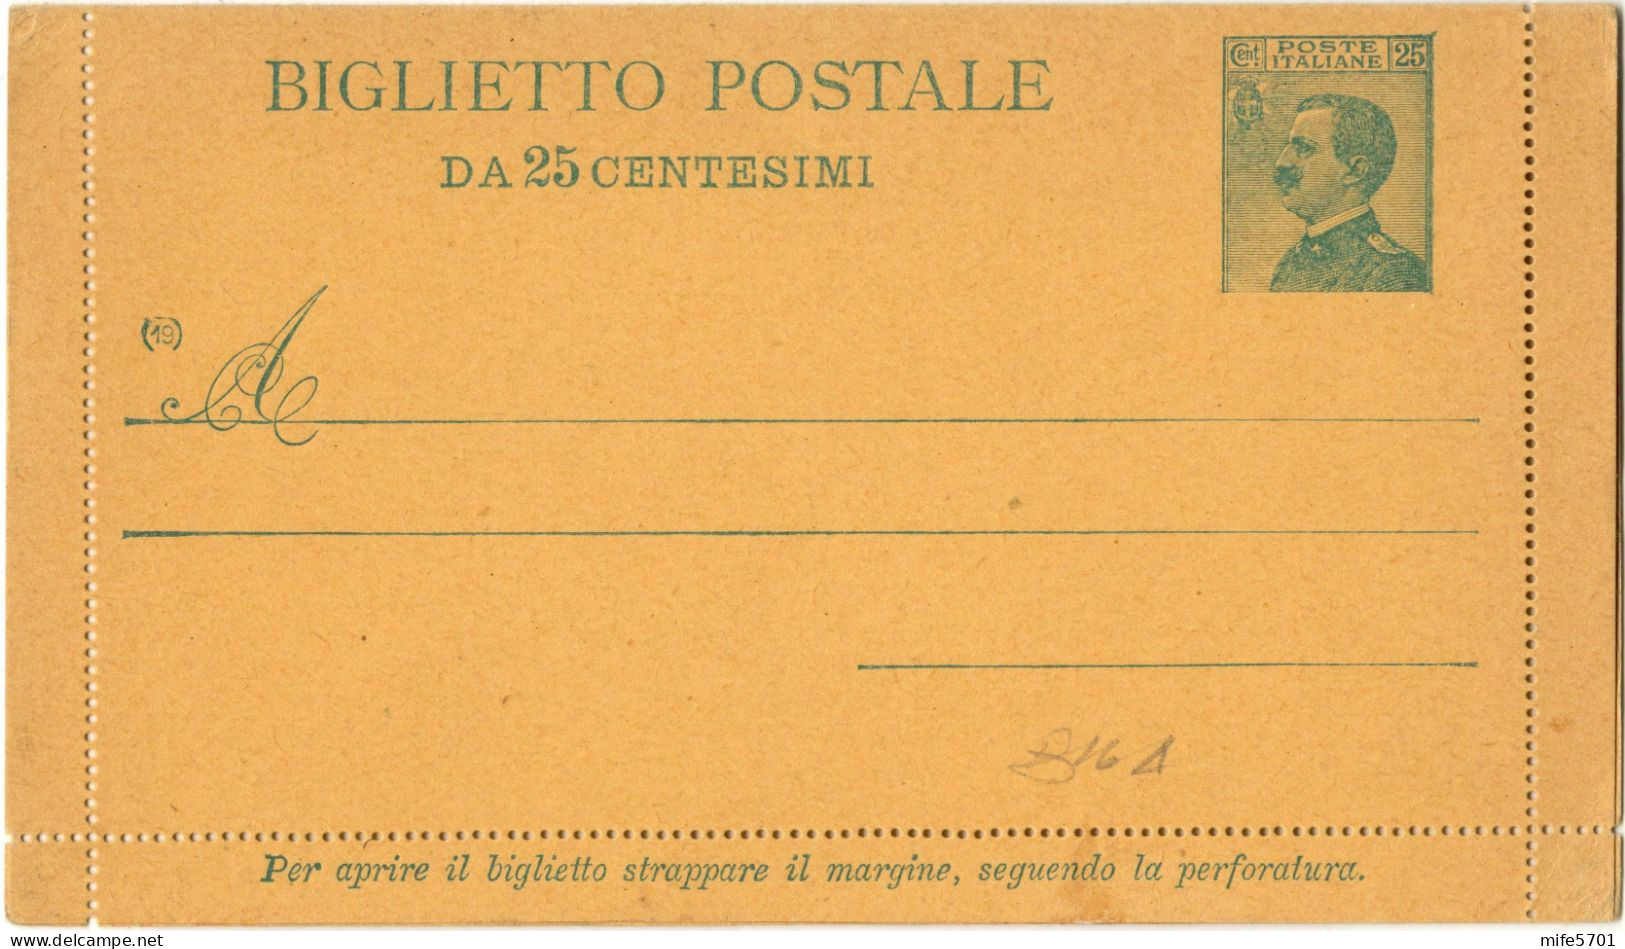 REGNO D'ITALIA B16A - 1919 BIGLIETTO POSTALE TIPO 'MICHETTI' DA C. 25 V.E.III VOLTO A SINISTRA - NUOVO FILAGRANO B16A - Entiers Postaux